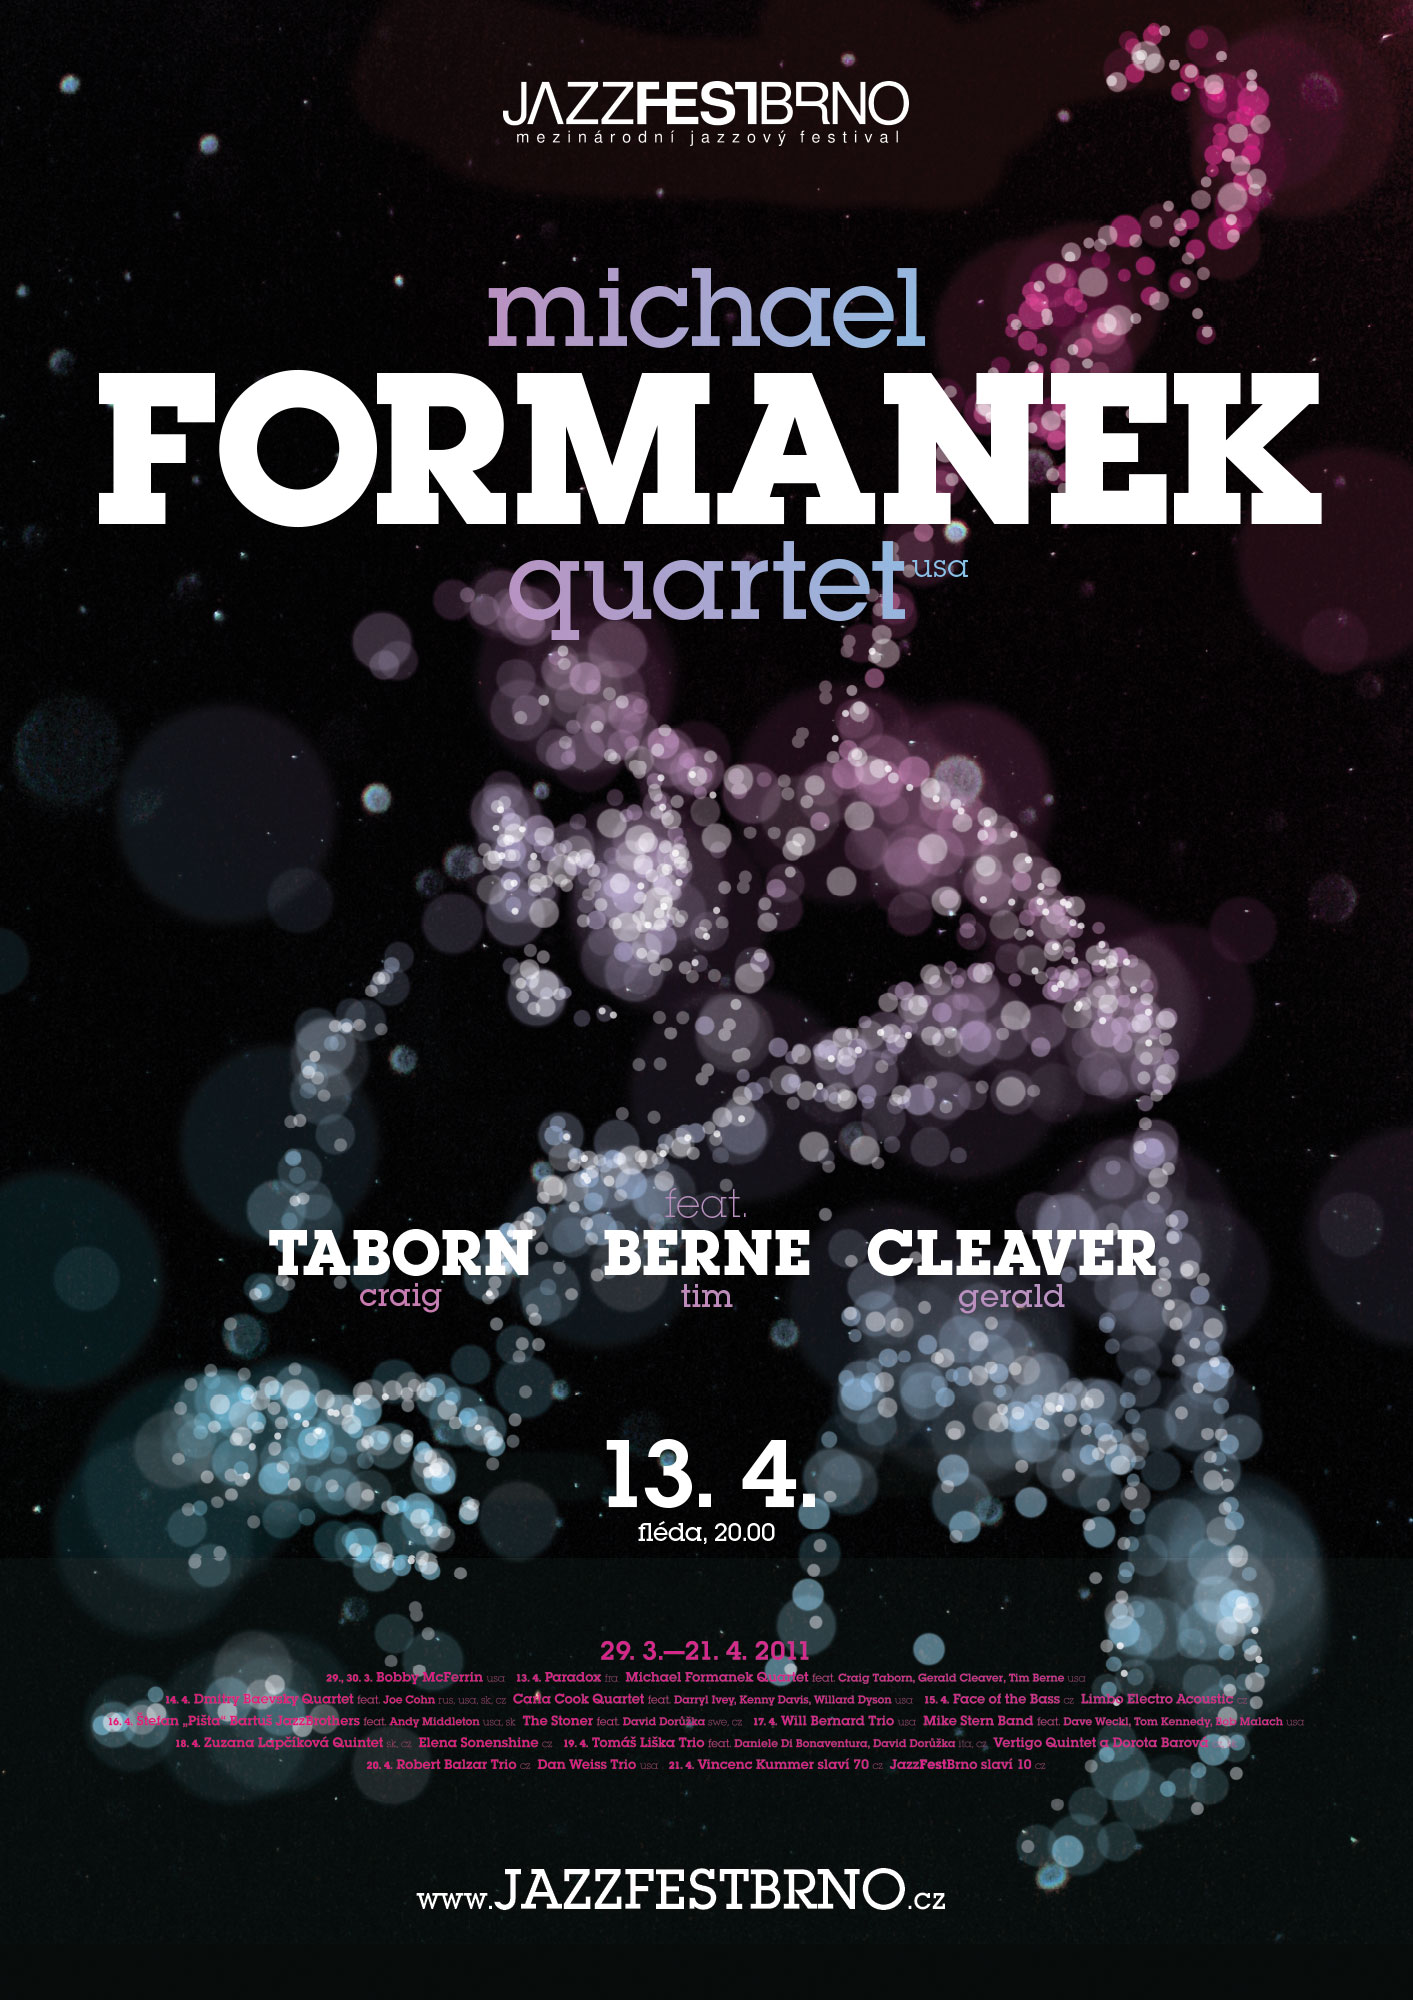 JazzFestBrno 2011 – Michael Formanek